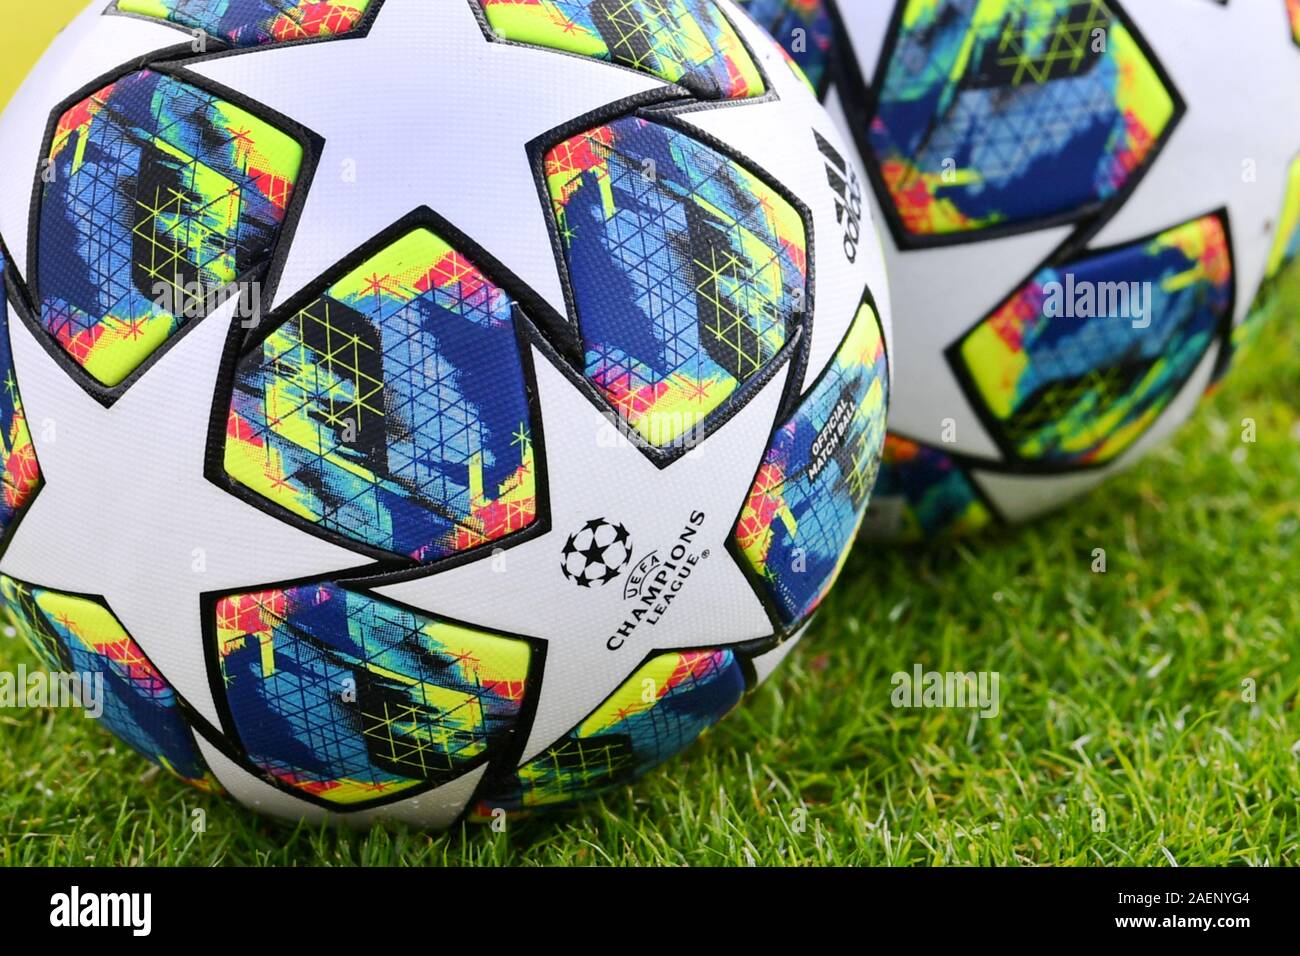 Balón adidas oficial de la de Campeones de la temporada 2019 / 2020.Sachaufnhame, cerca del final de la formación el FC Bayern de Múnich en frente de los octavos de final